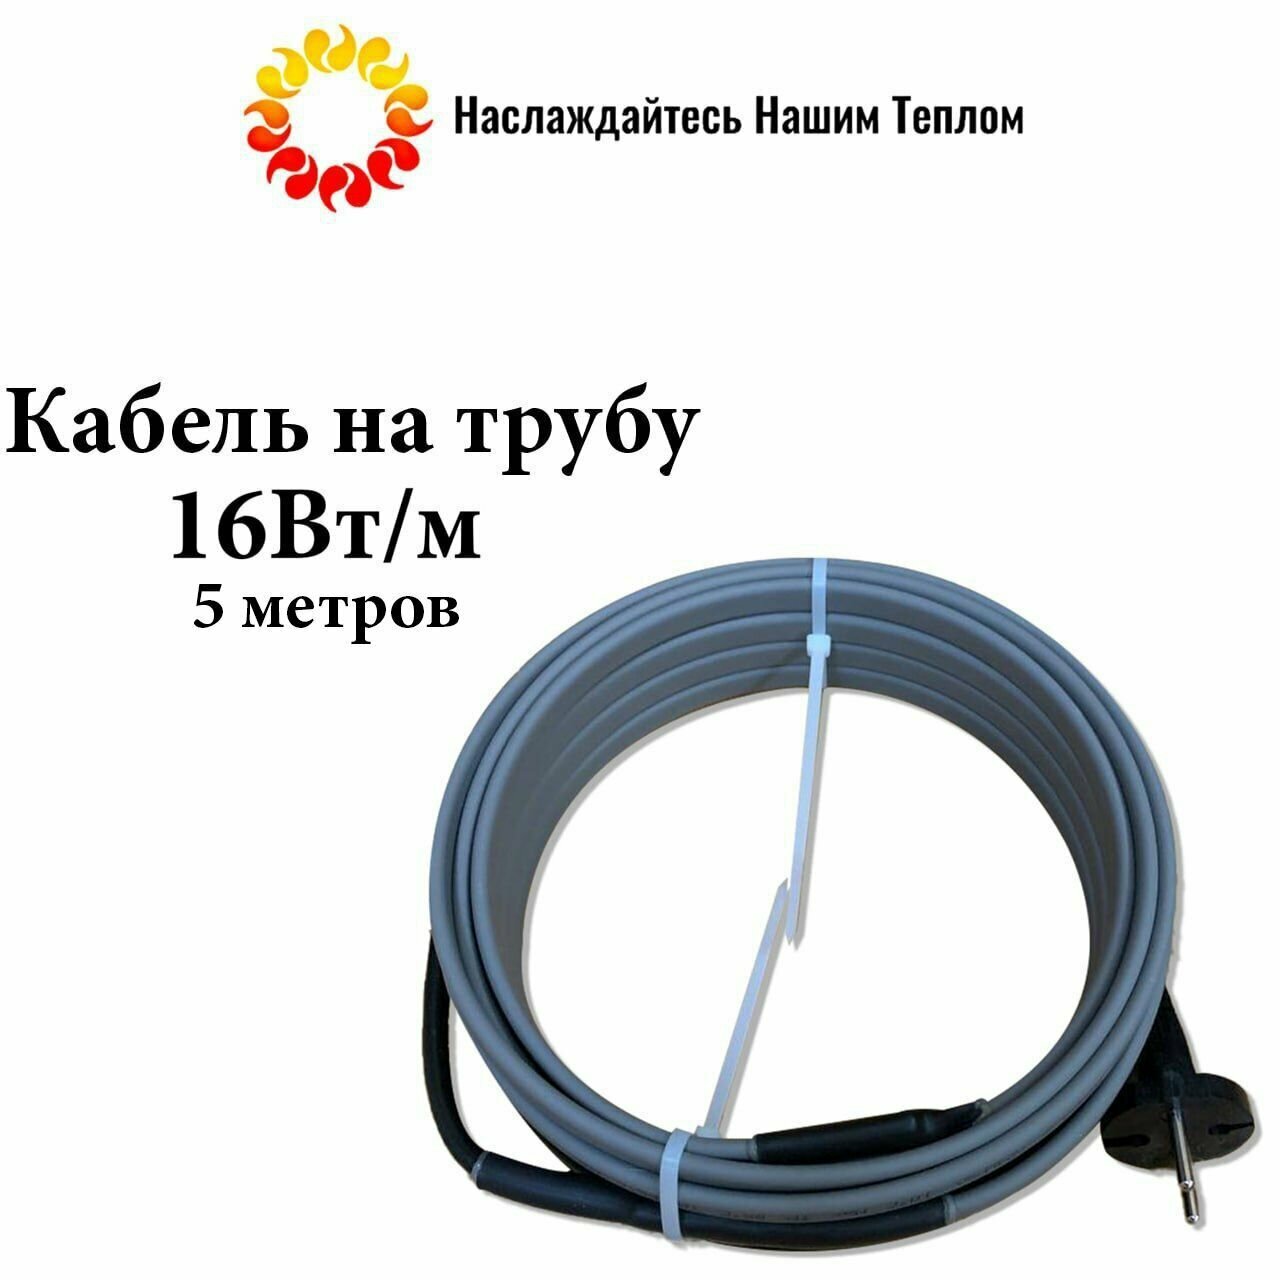 Саморегулирующийся греющий кабель на трубу (наружный) для водопровода и канализации, 16 Вт/м, длина 5 метров